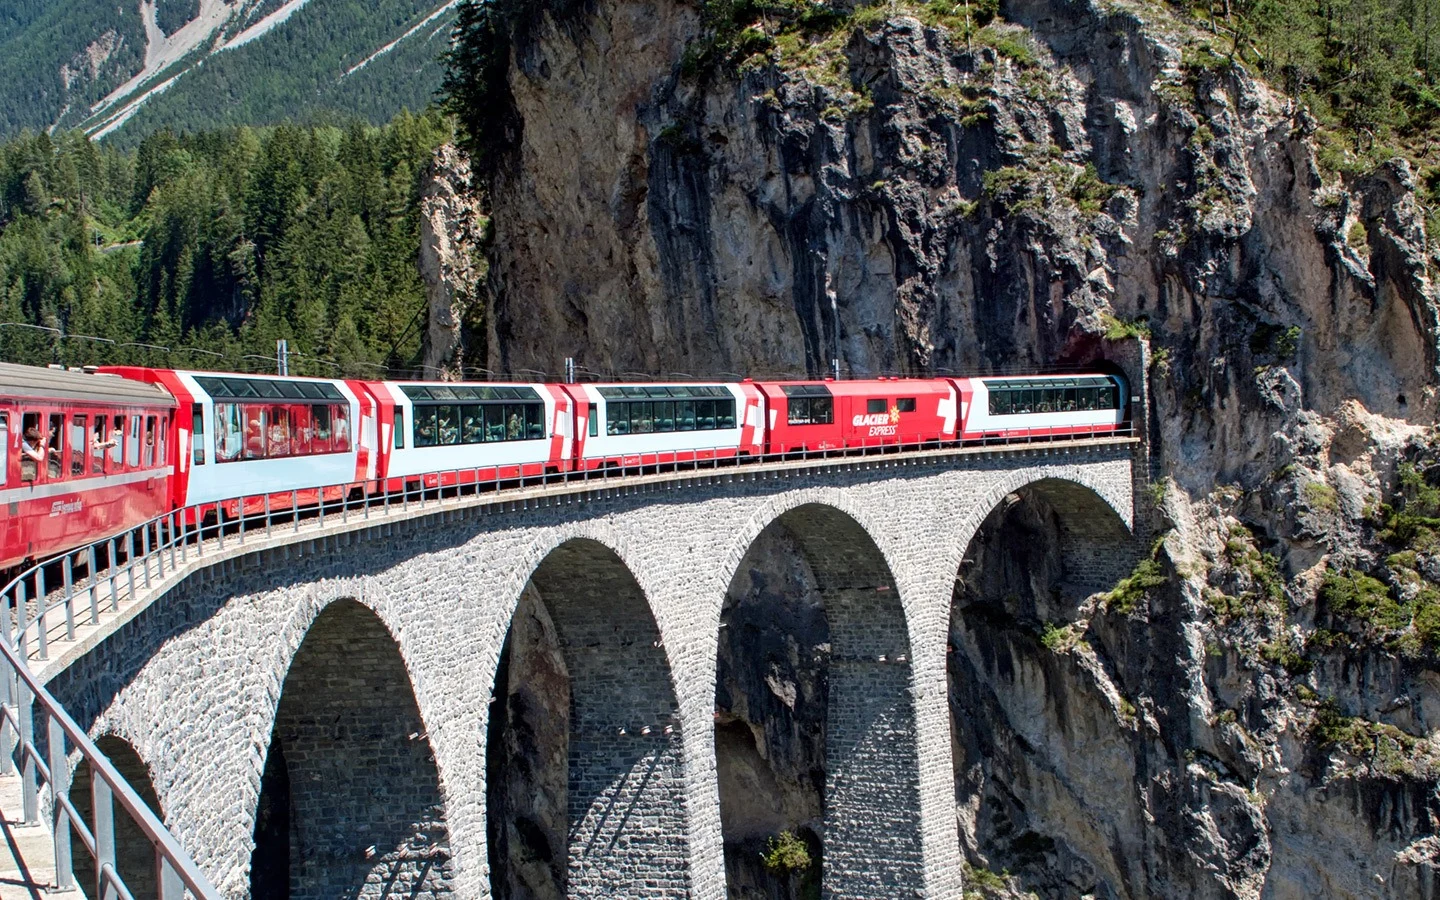 Glacier Express scenic train in Switzerland